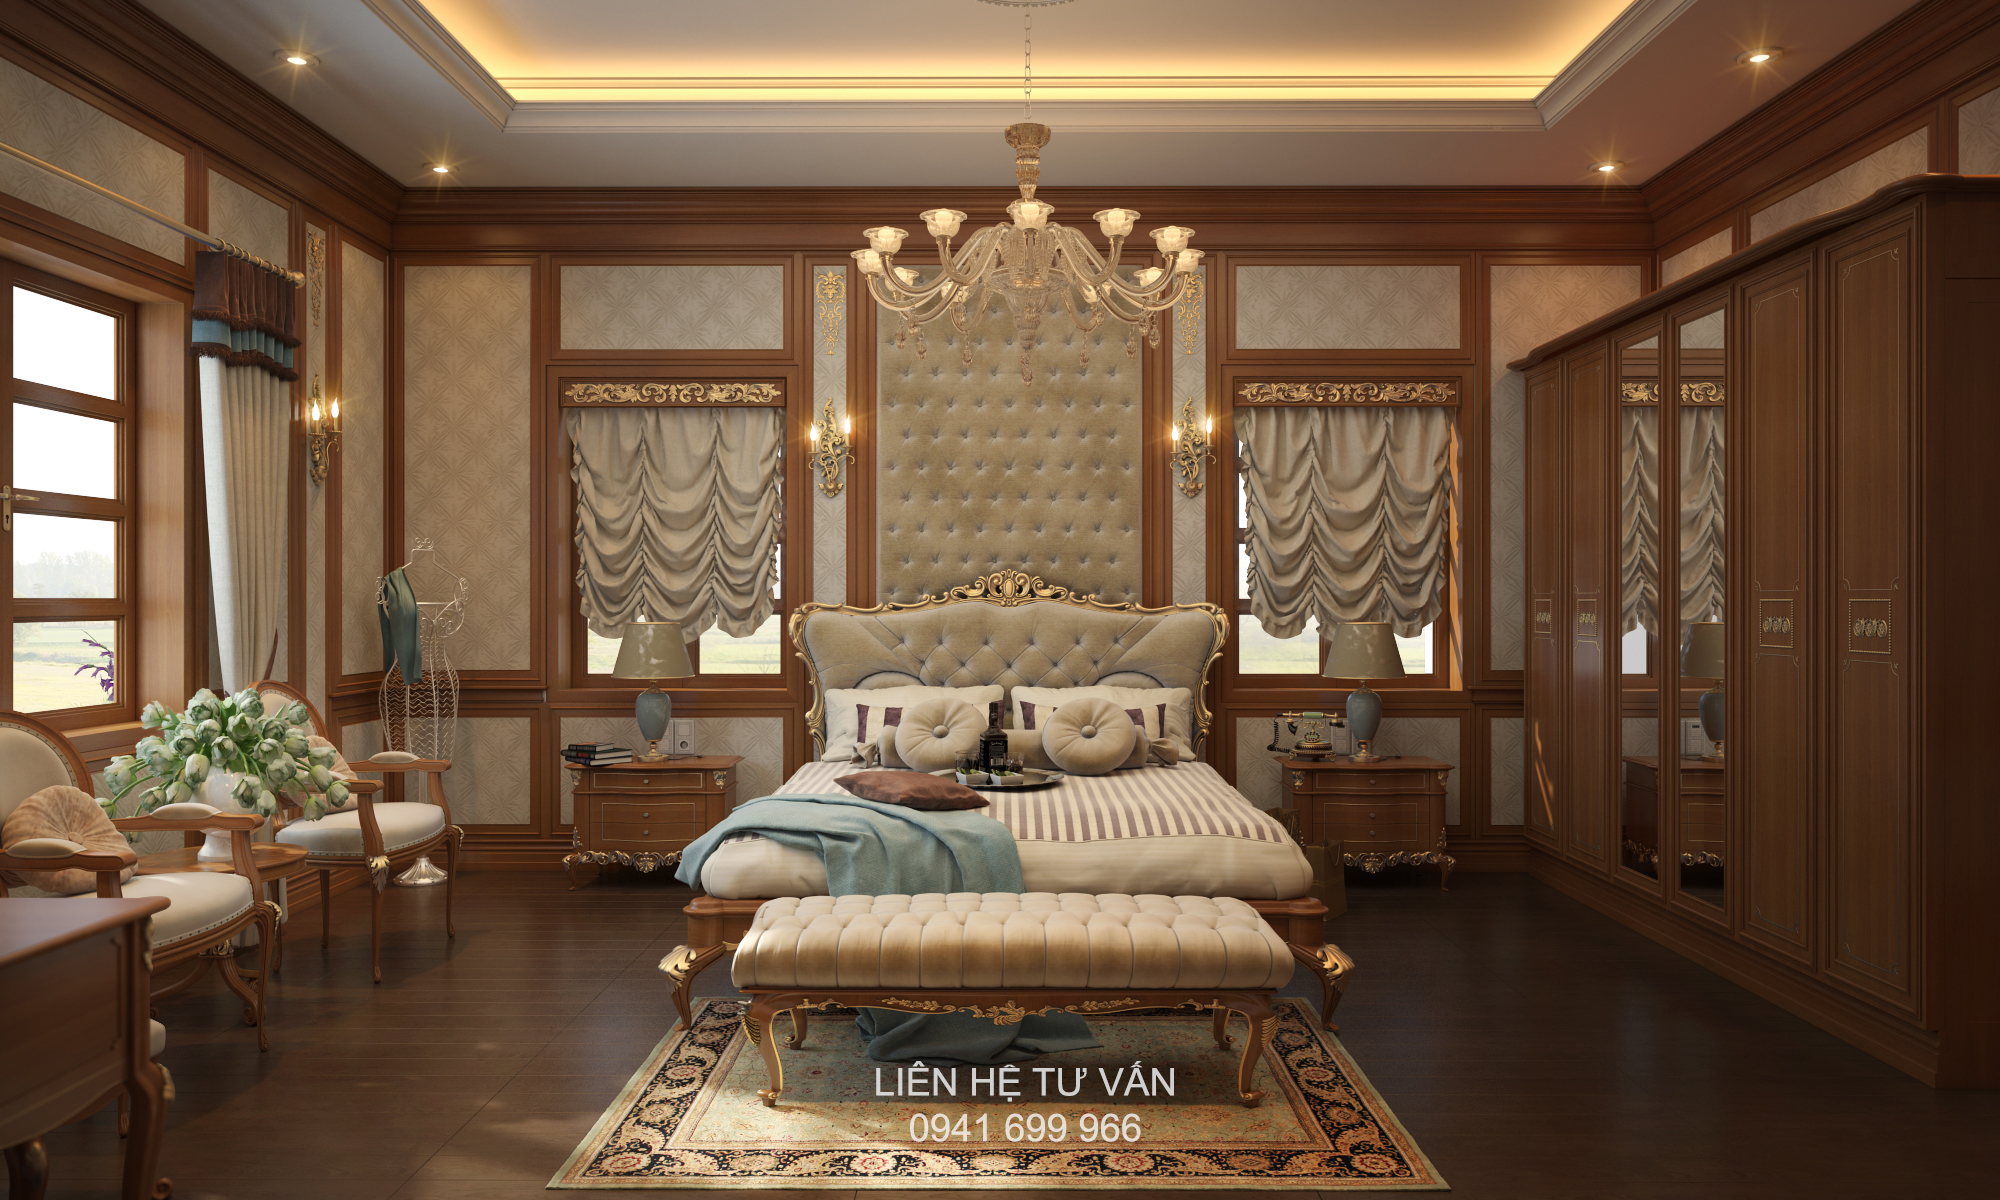 Phòng ngủ với tone màu của gỗ mang phong cách Tân cổ điển